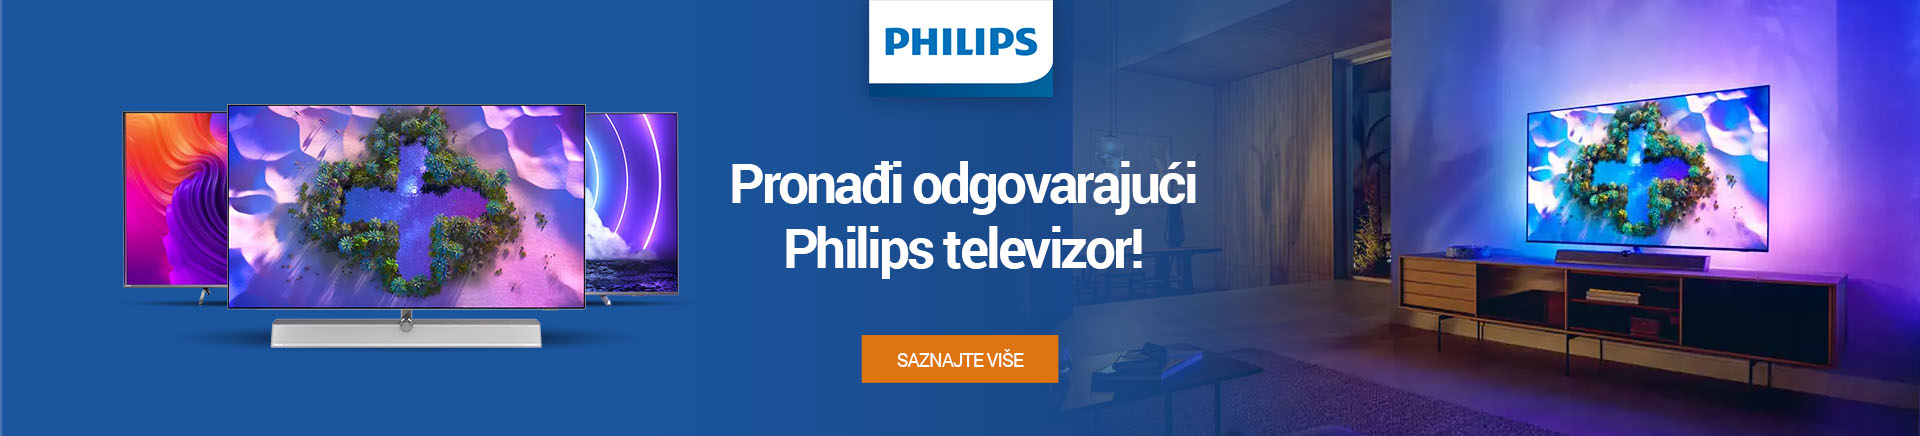 BIH_Pronadi odgovarajuci Philips televizor_2_MOBILE 380 X 436.jpg